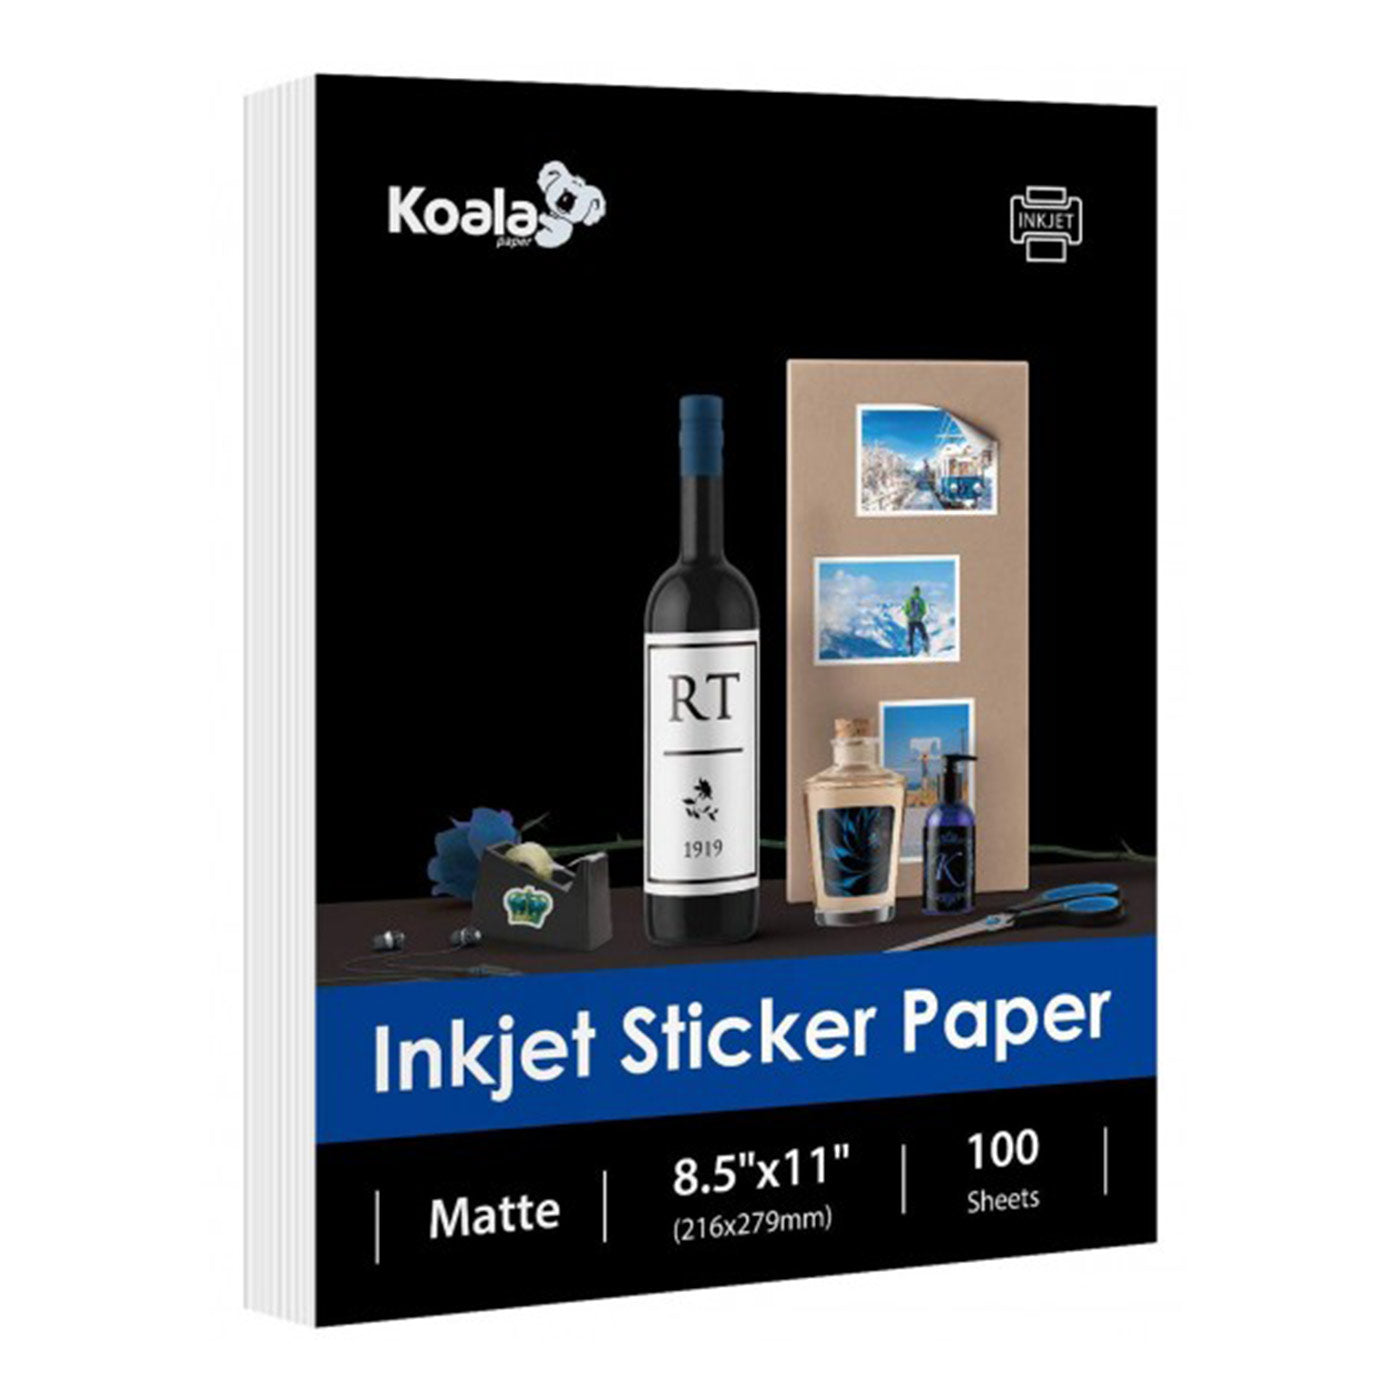 Koala Printable Matte Sticker Paper 100 sheets 8.5x11 inches for Inkjet & Laser Printer